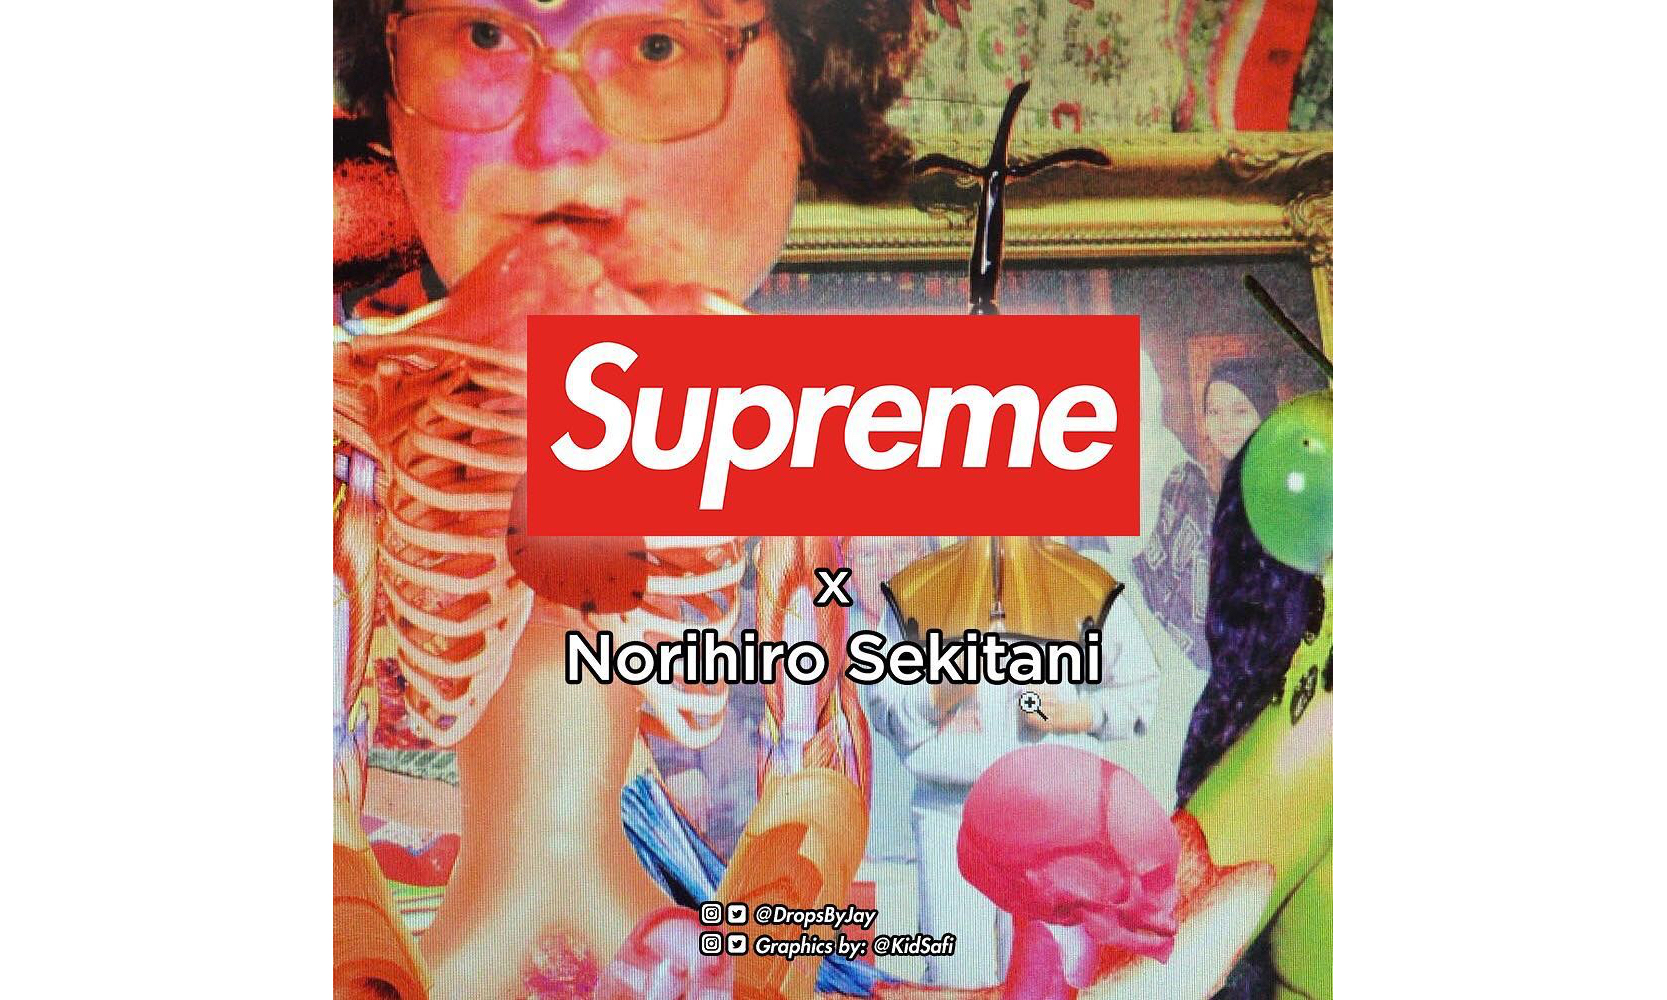 Supreme 下一个联乘对象公布：日本艺术家 Norihiro Sekitani